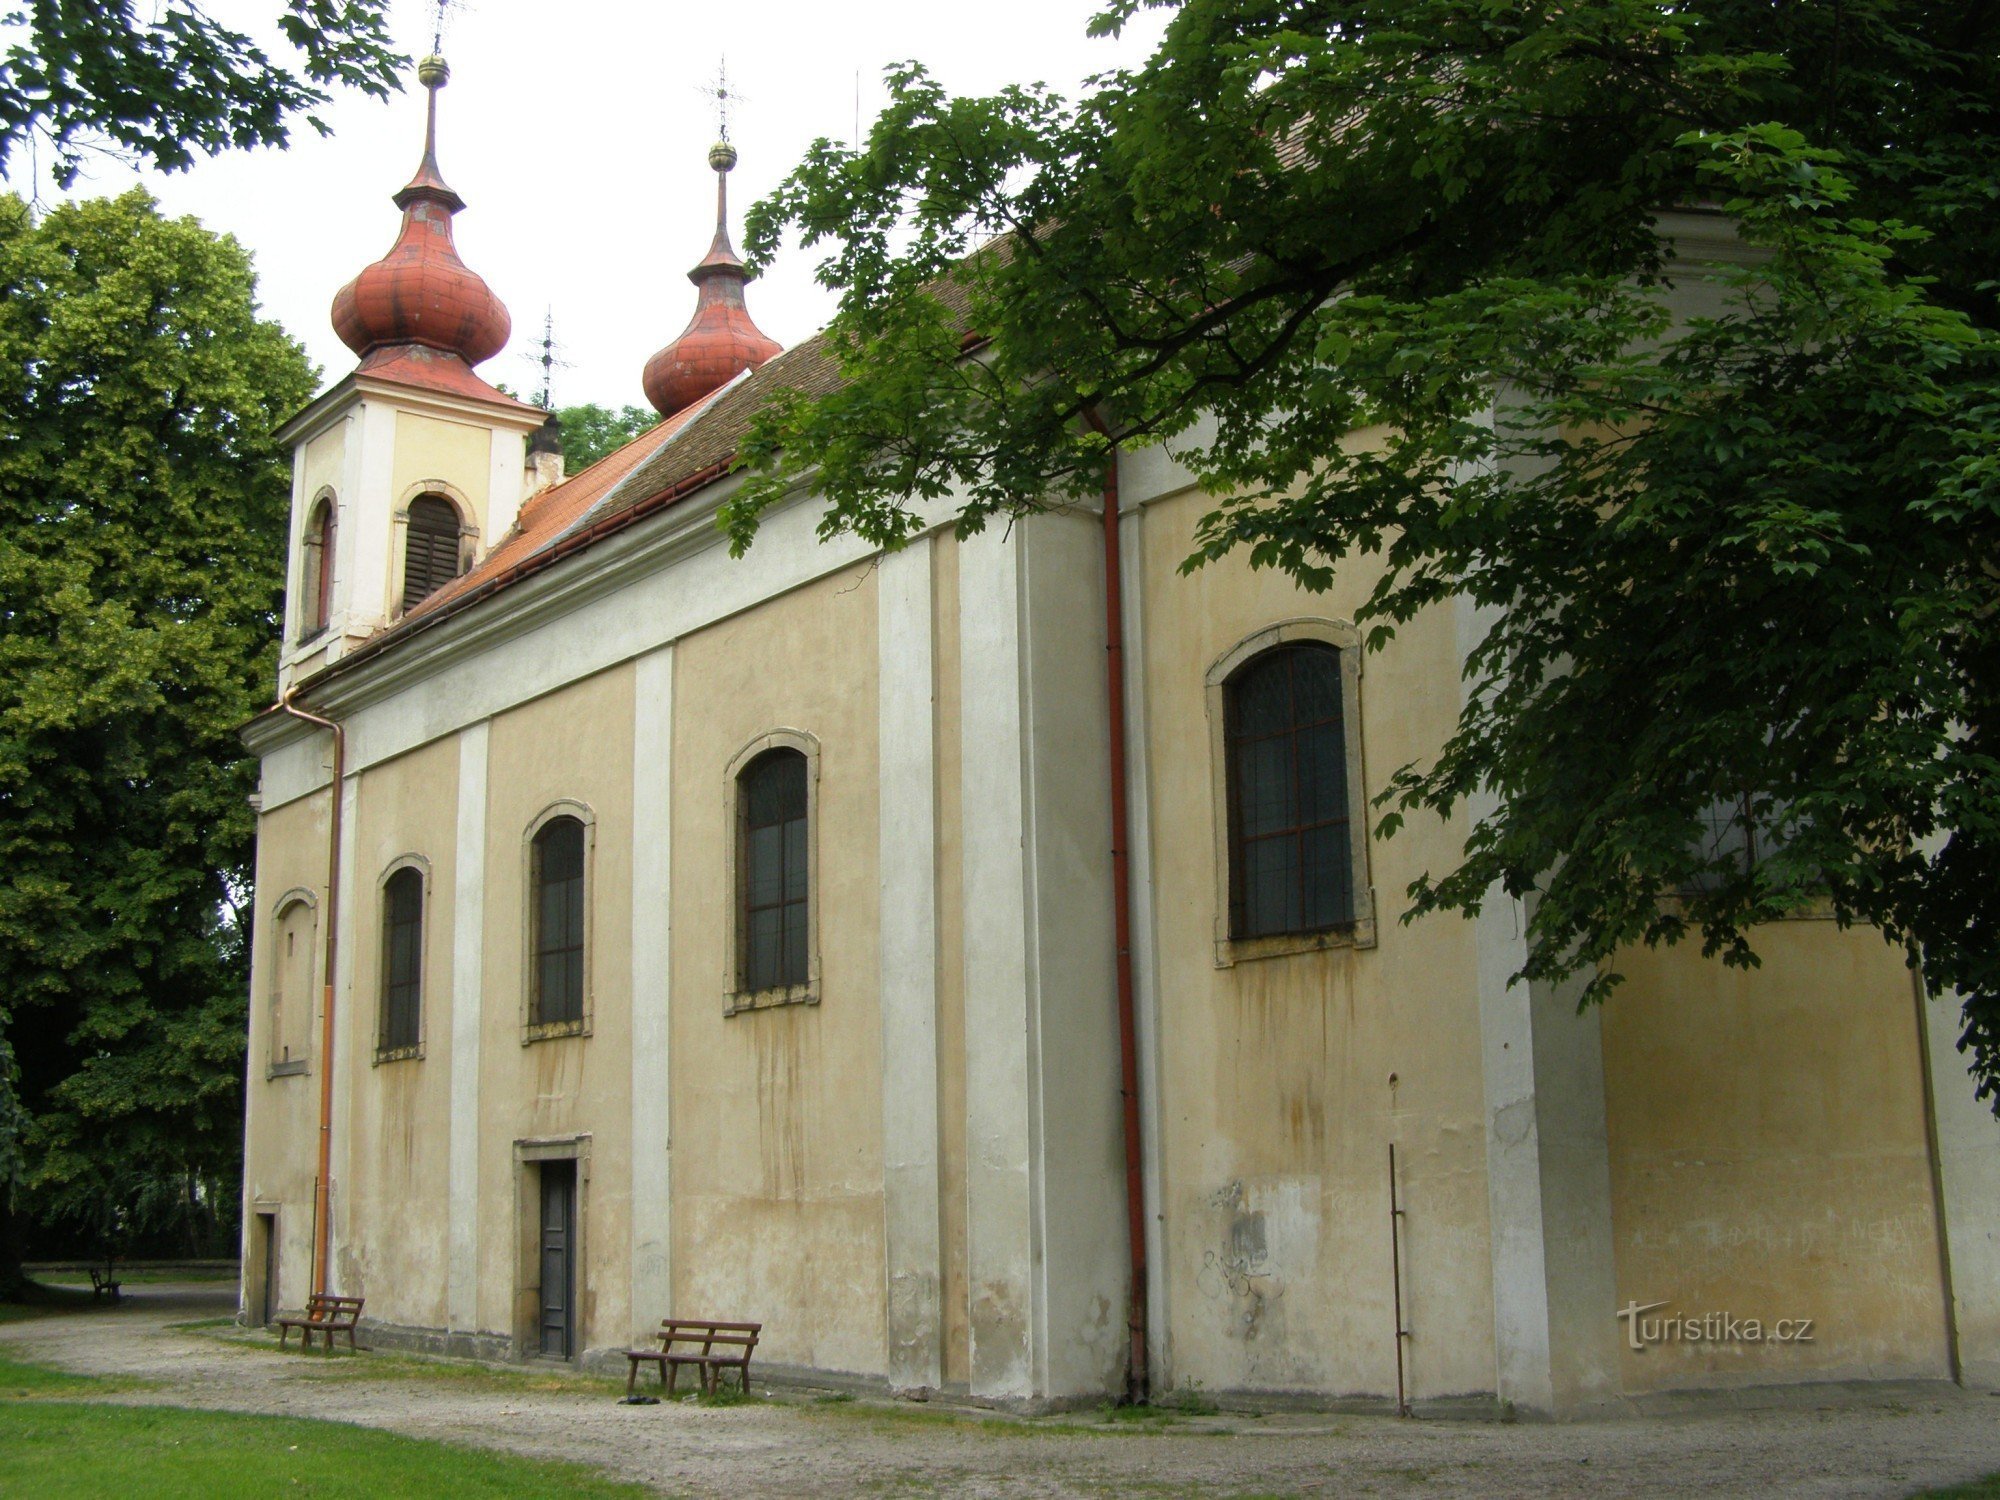 Nový Bydžov - Szentháromság templom